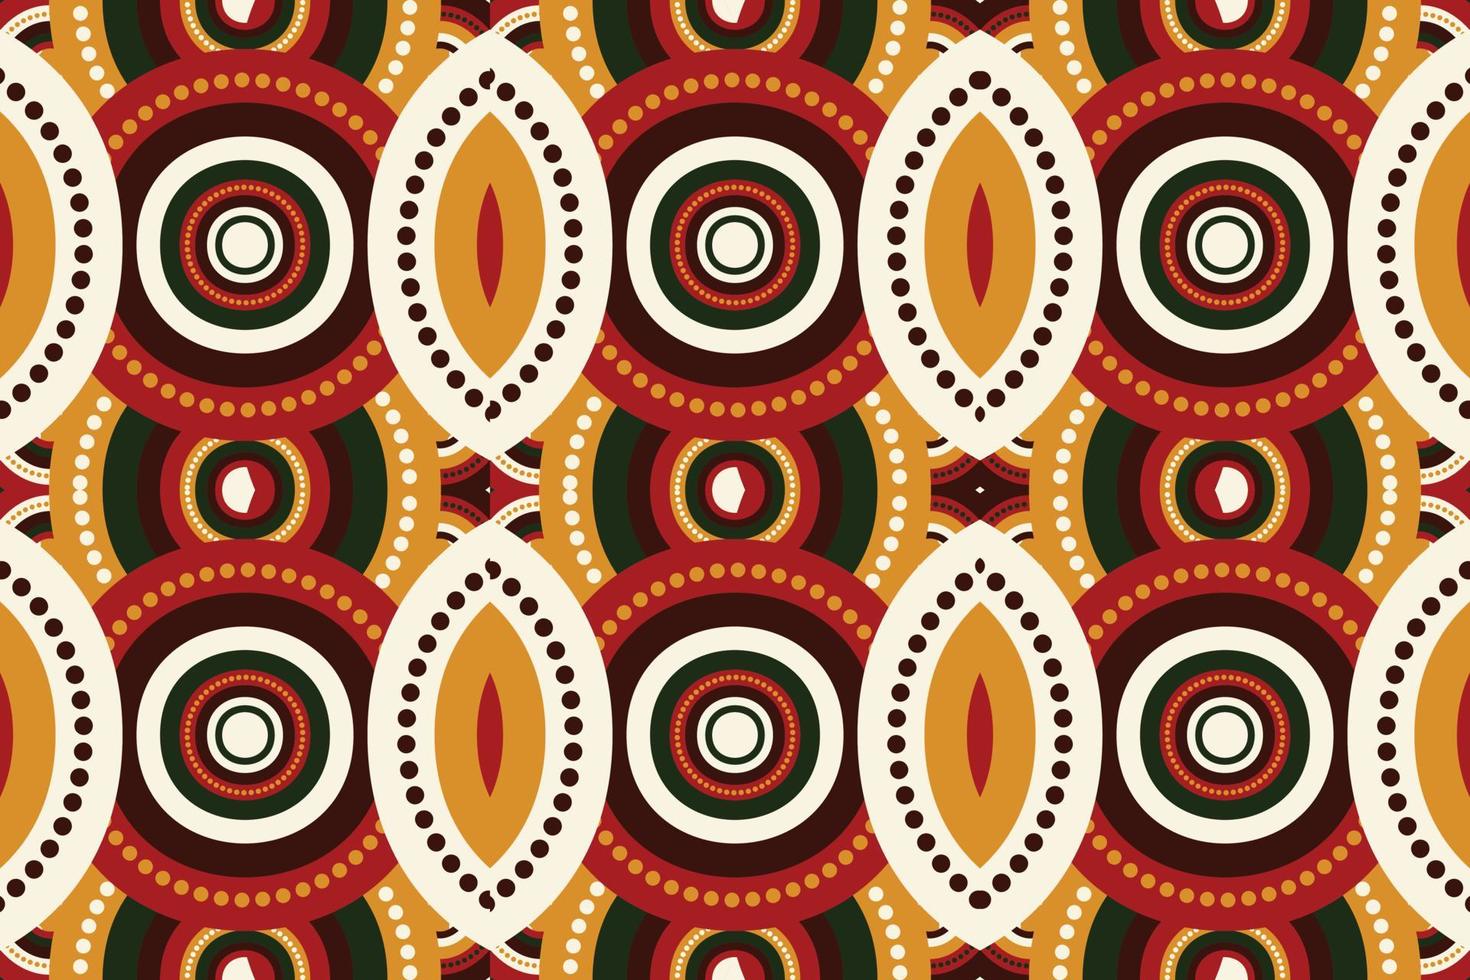 tissu kente authentique vecteur motif harmonieux design oriental ethnique traditionnel pour l'arrière-plan. broderie folklorique, indienne, scandinave, gitane, mexicaine, tapis africain, papier peint.